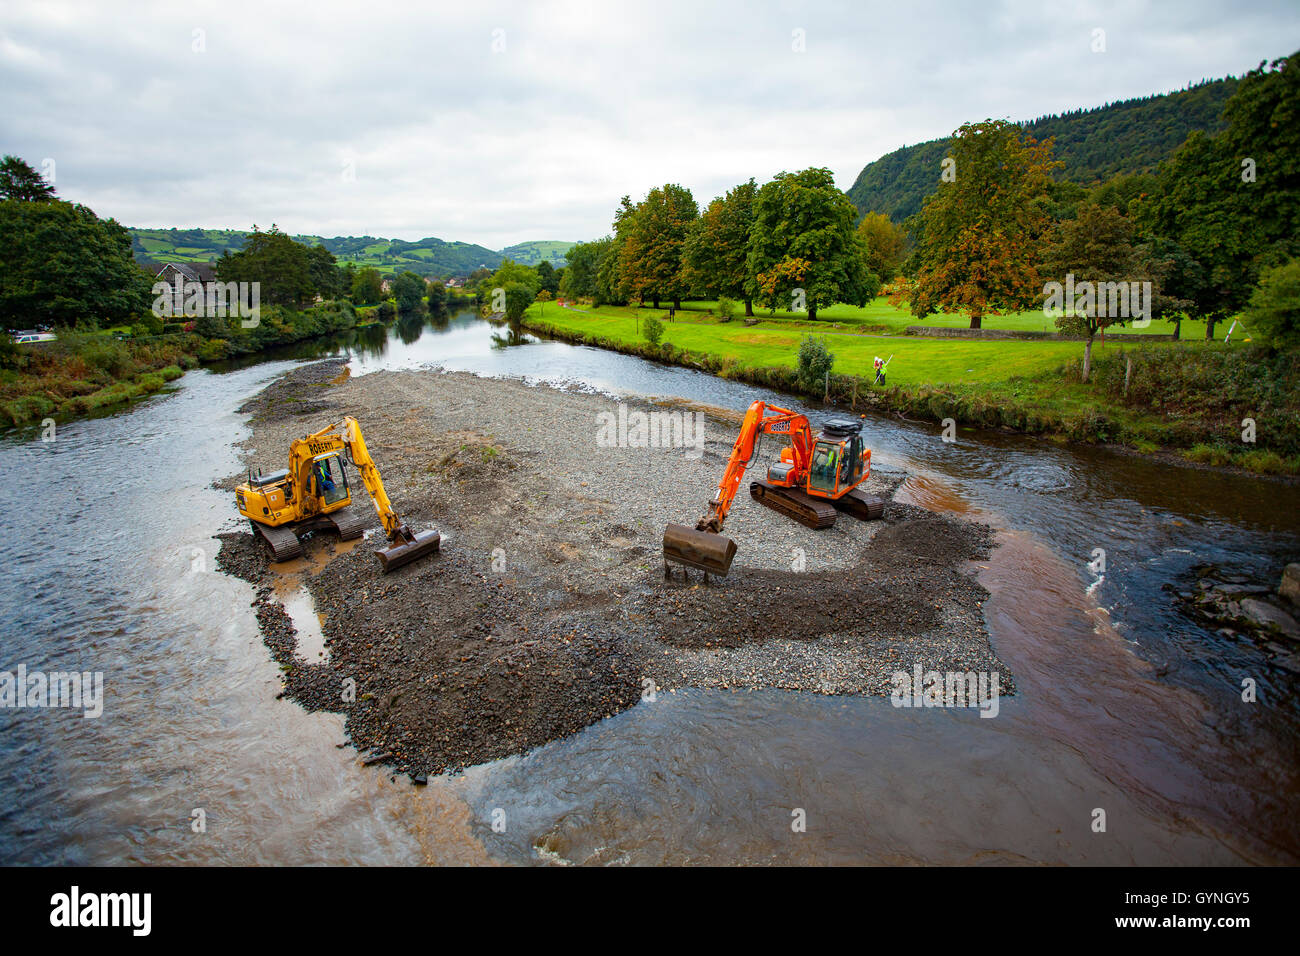 L'autorisation a été accordée et le travail commence sur le dragage de la rivière Conwy pour prévenir les inondations dans la vallée qui est notoire pour l'inondation. Diggers at work l'excavation de la rivière pour l'hiver Banque D'Images